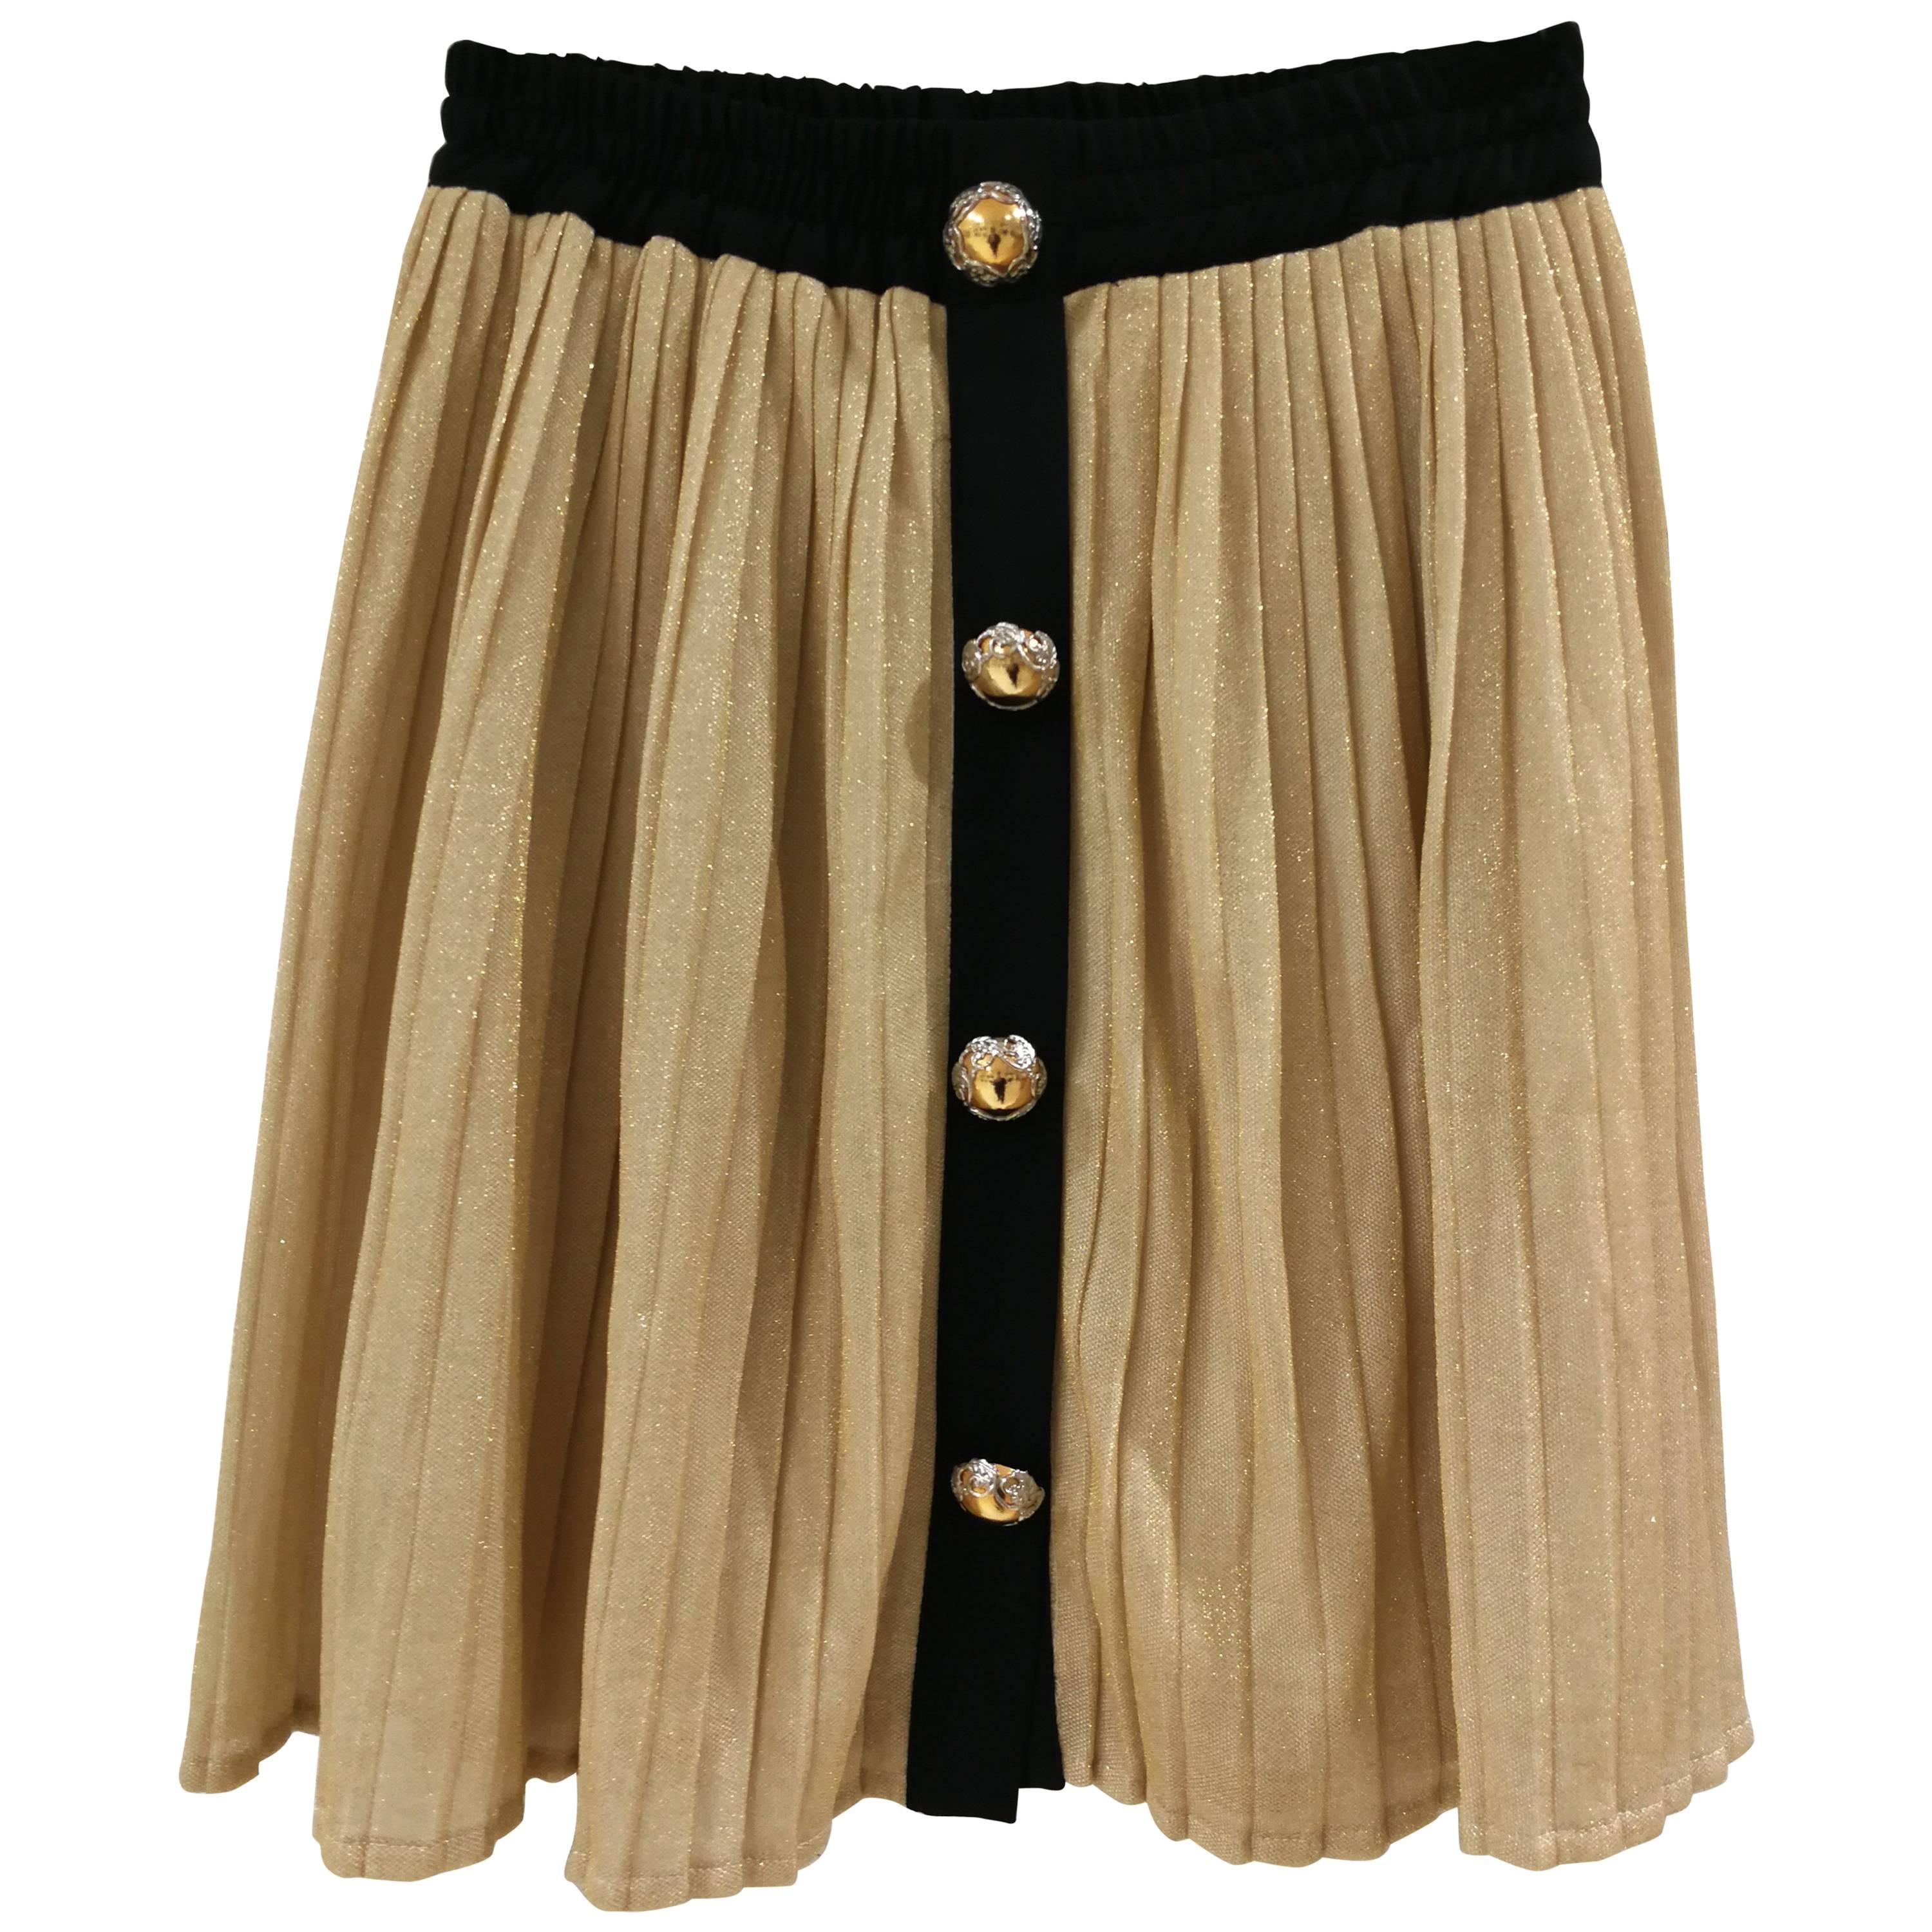 Gold Black Vintage Skirt